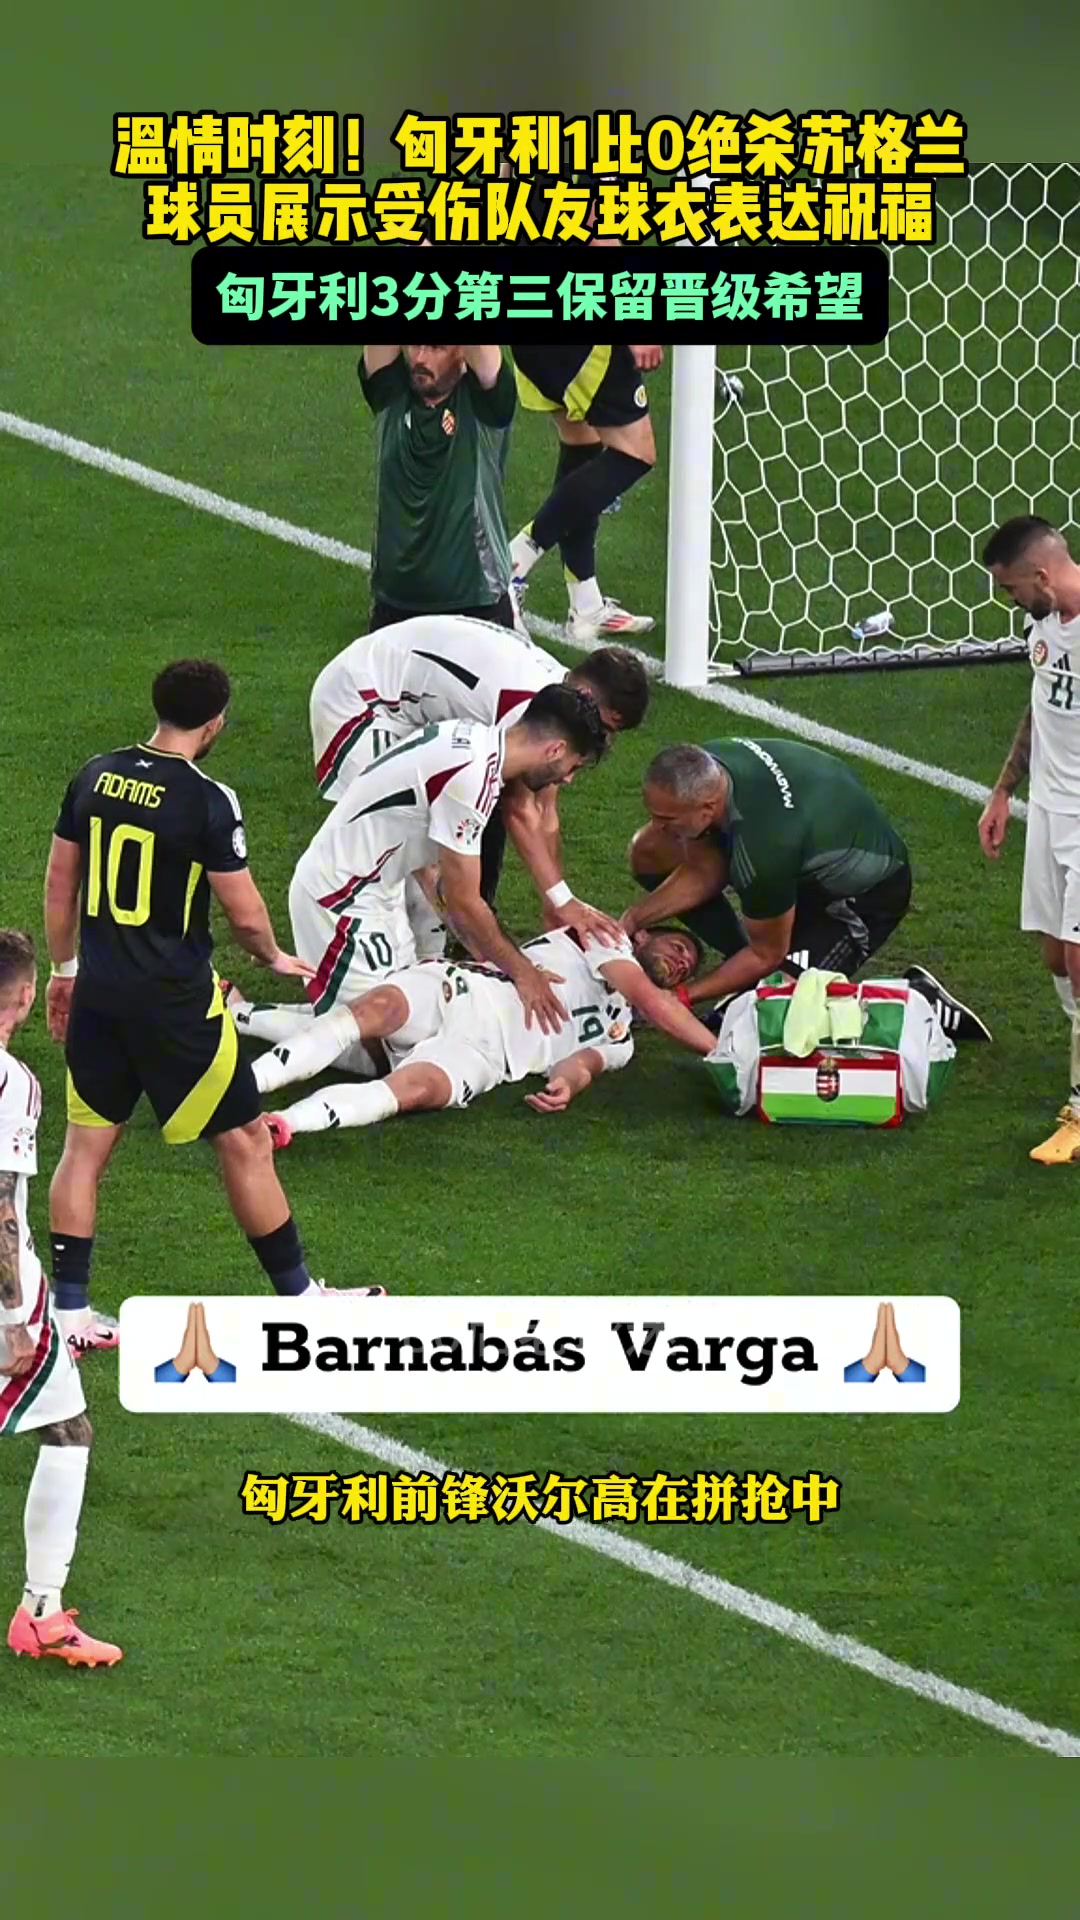 温情时刻匈牙利赛后球员展示受伤队友球衣表达祝福